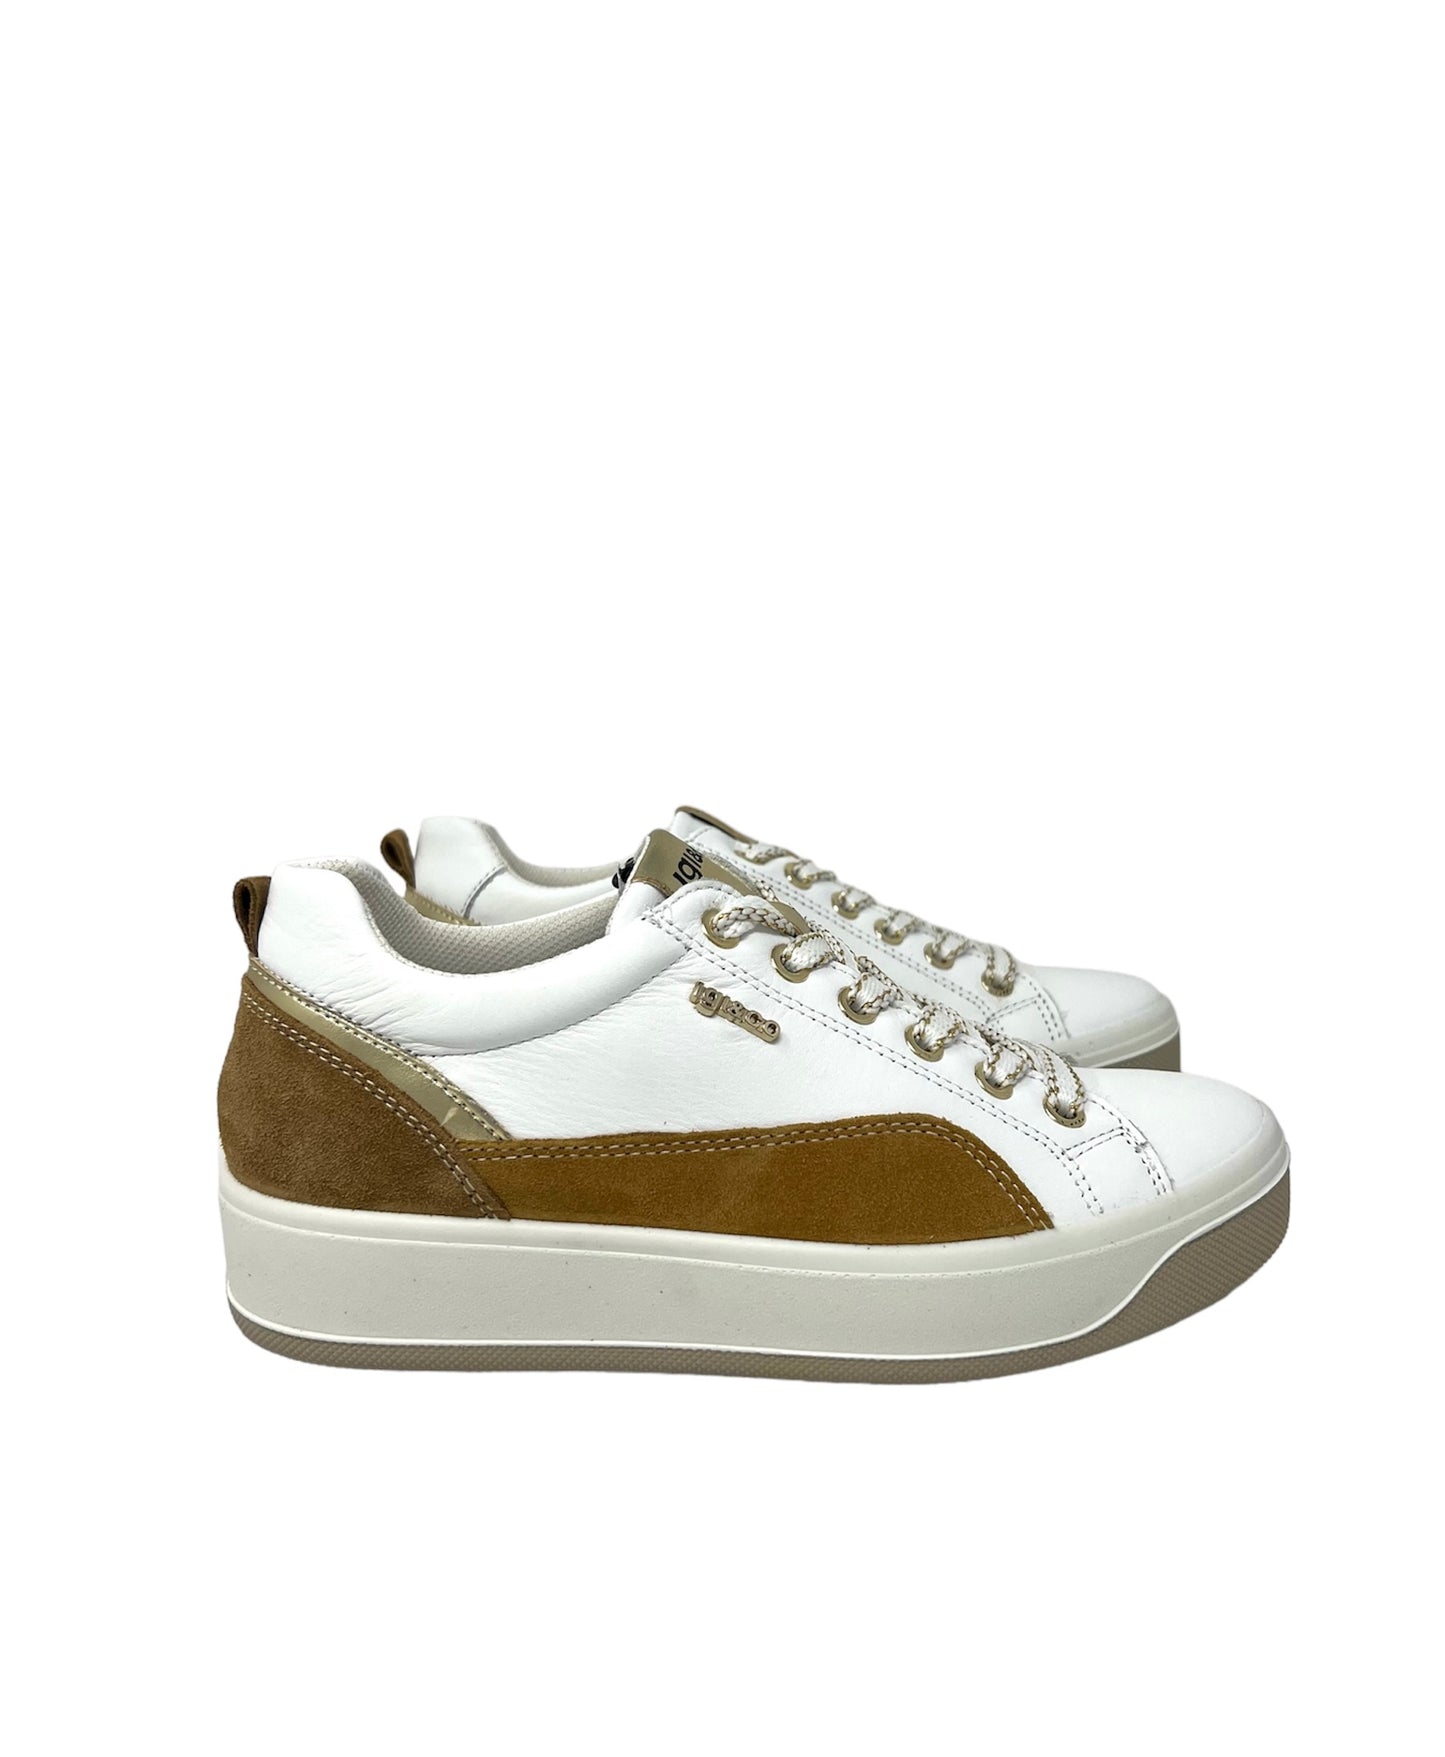 Sneakers ava in nappa soft bianco cuoio - 5658400